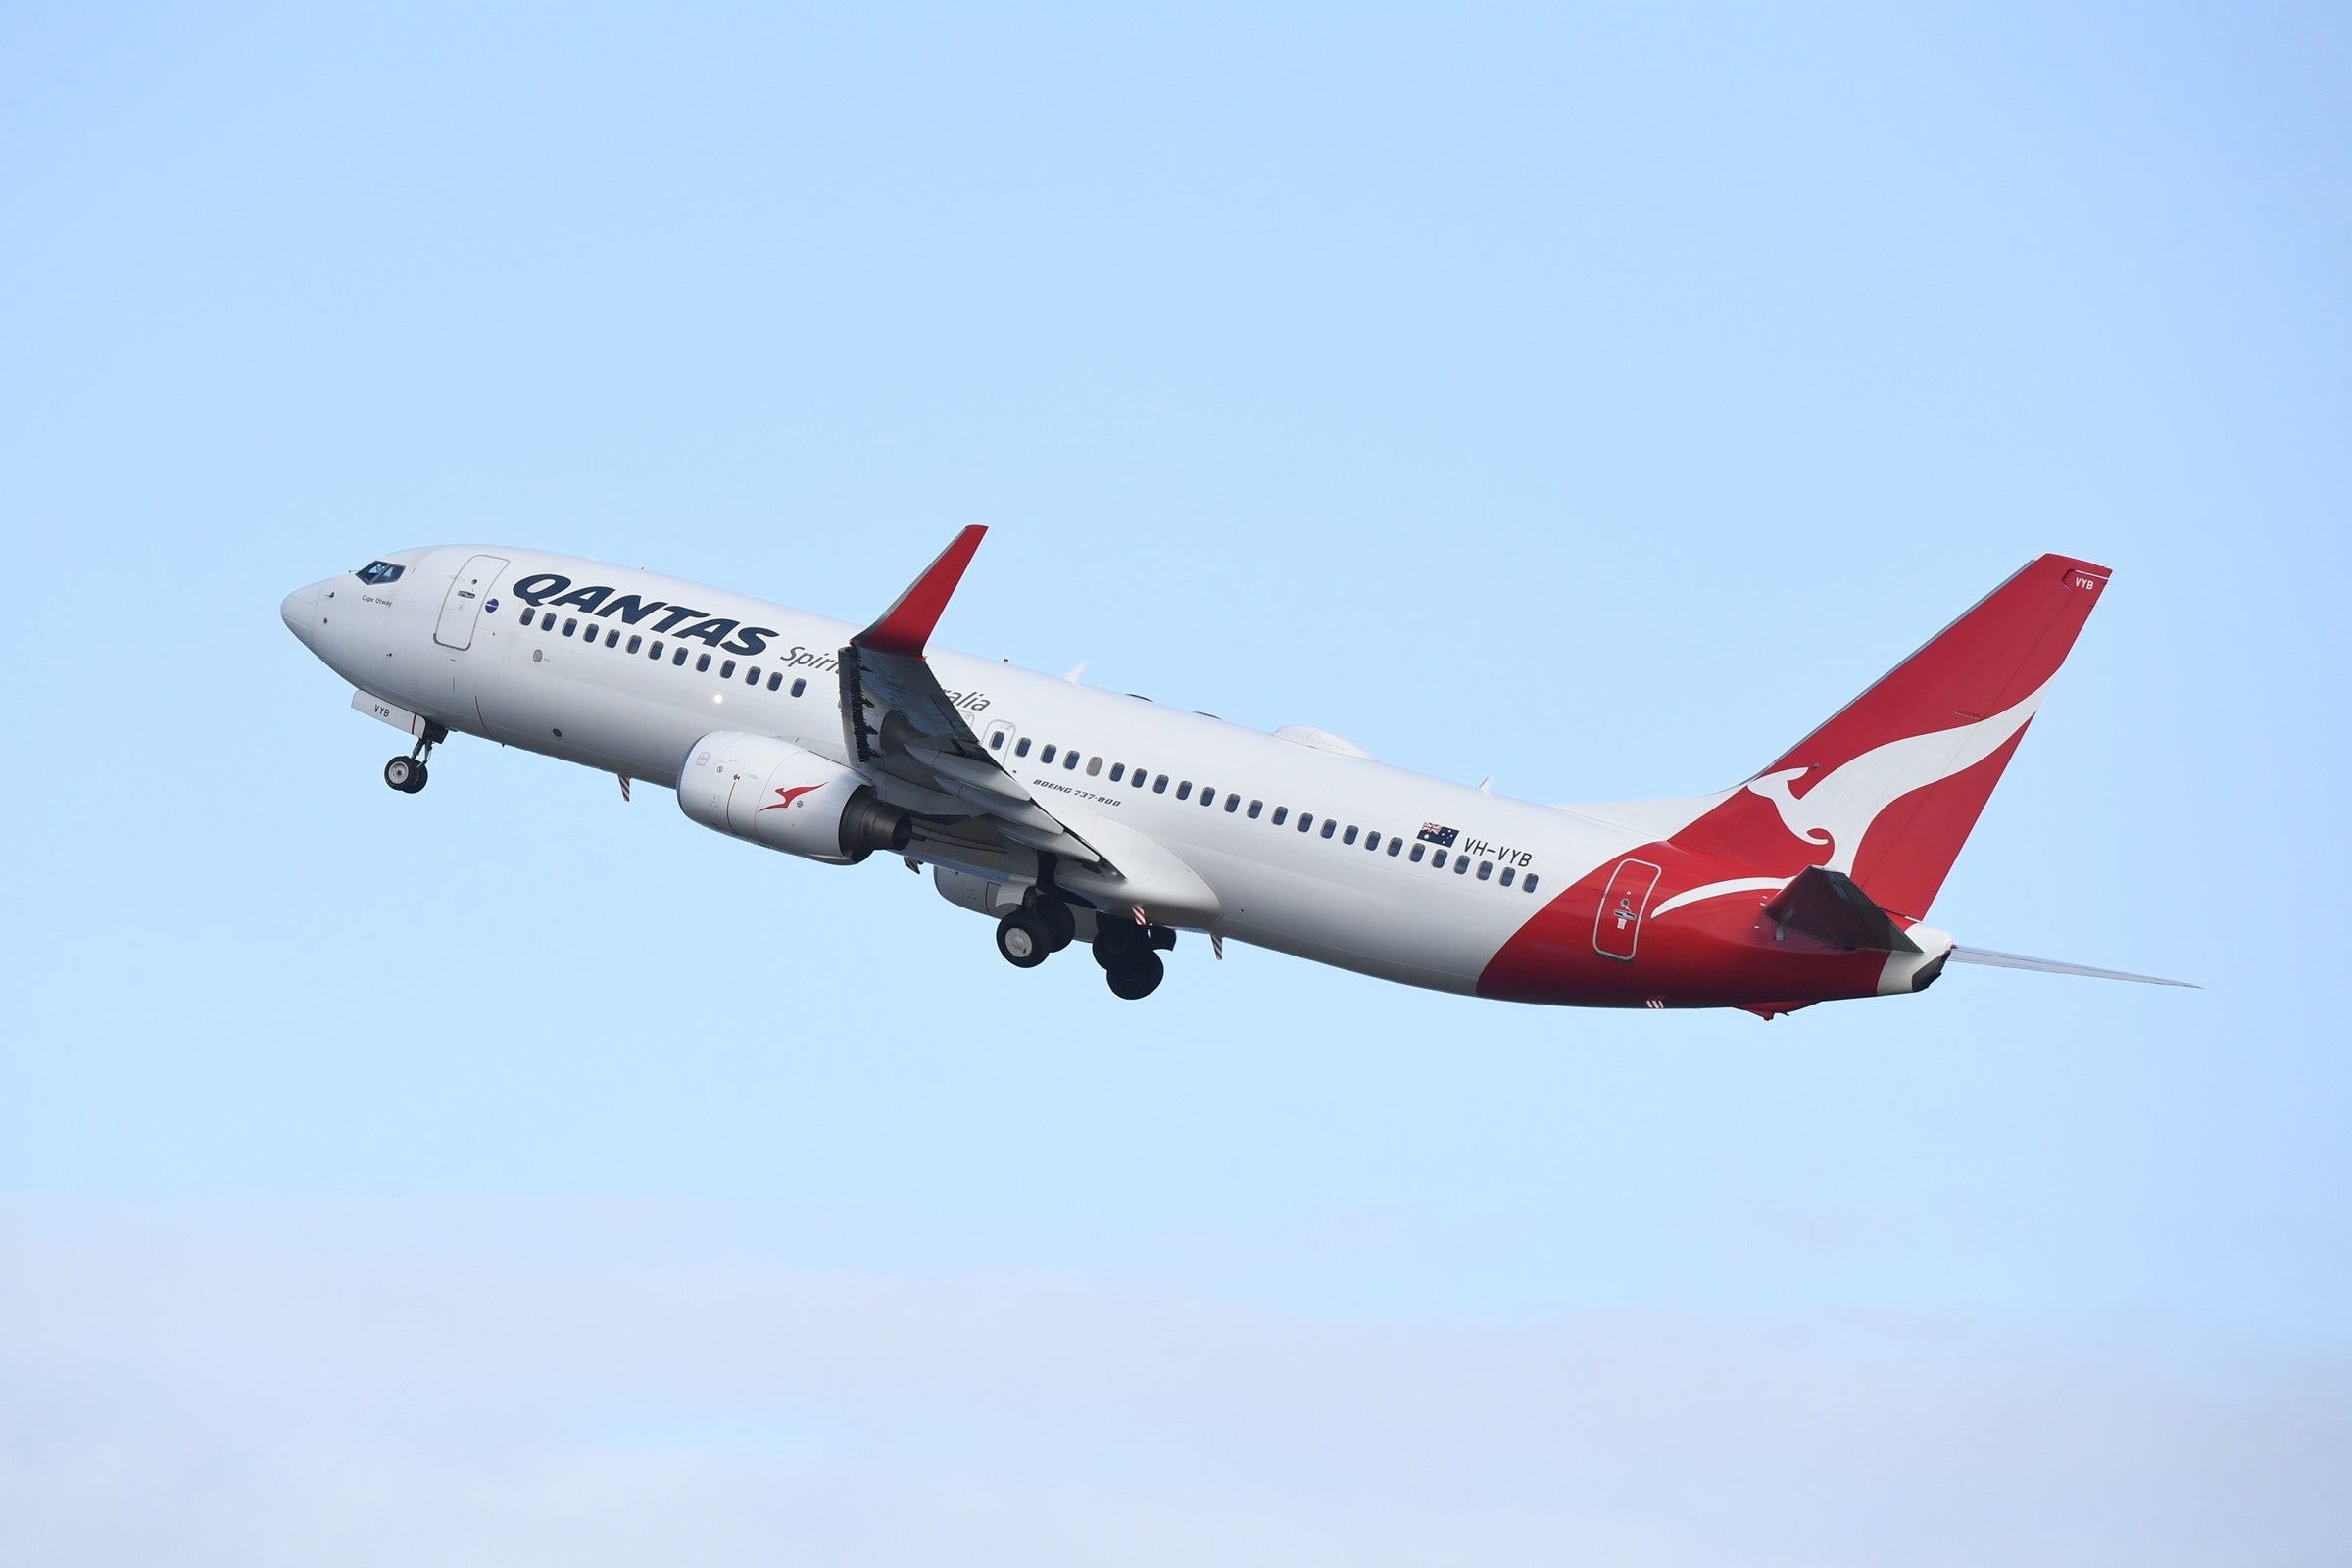 Qantas Boeing 737 in the air